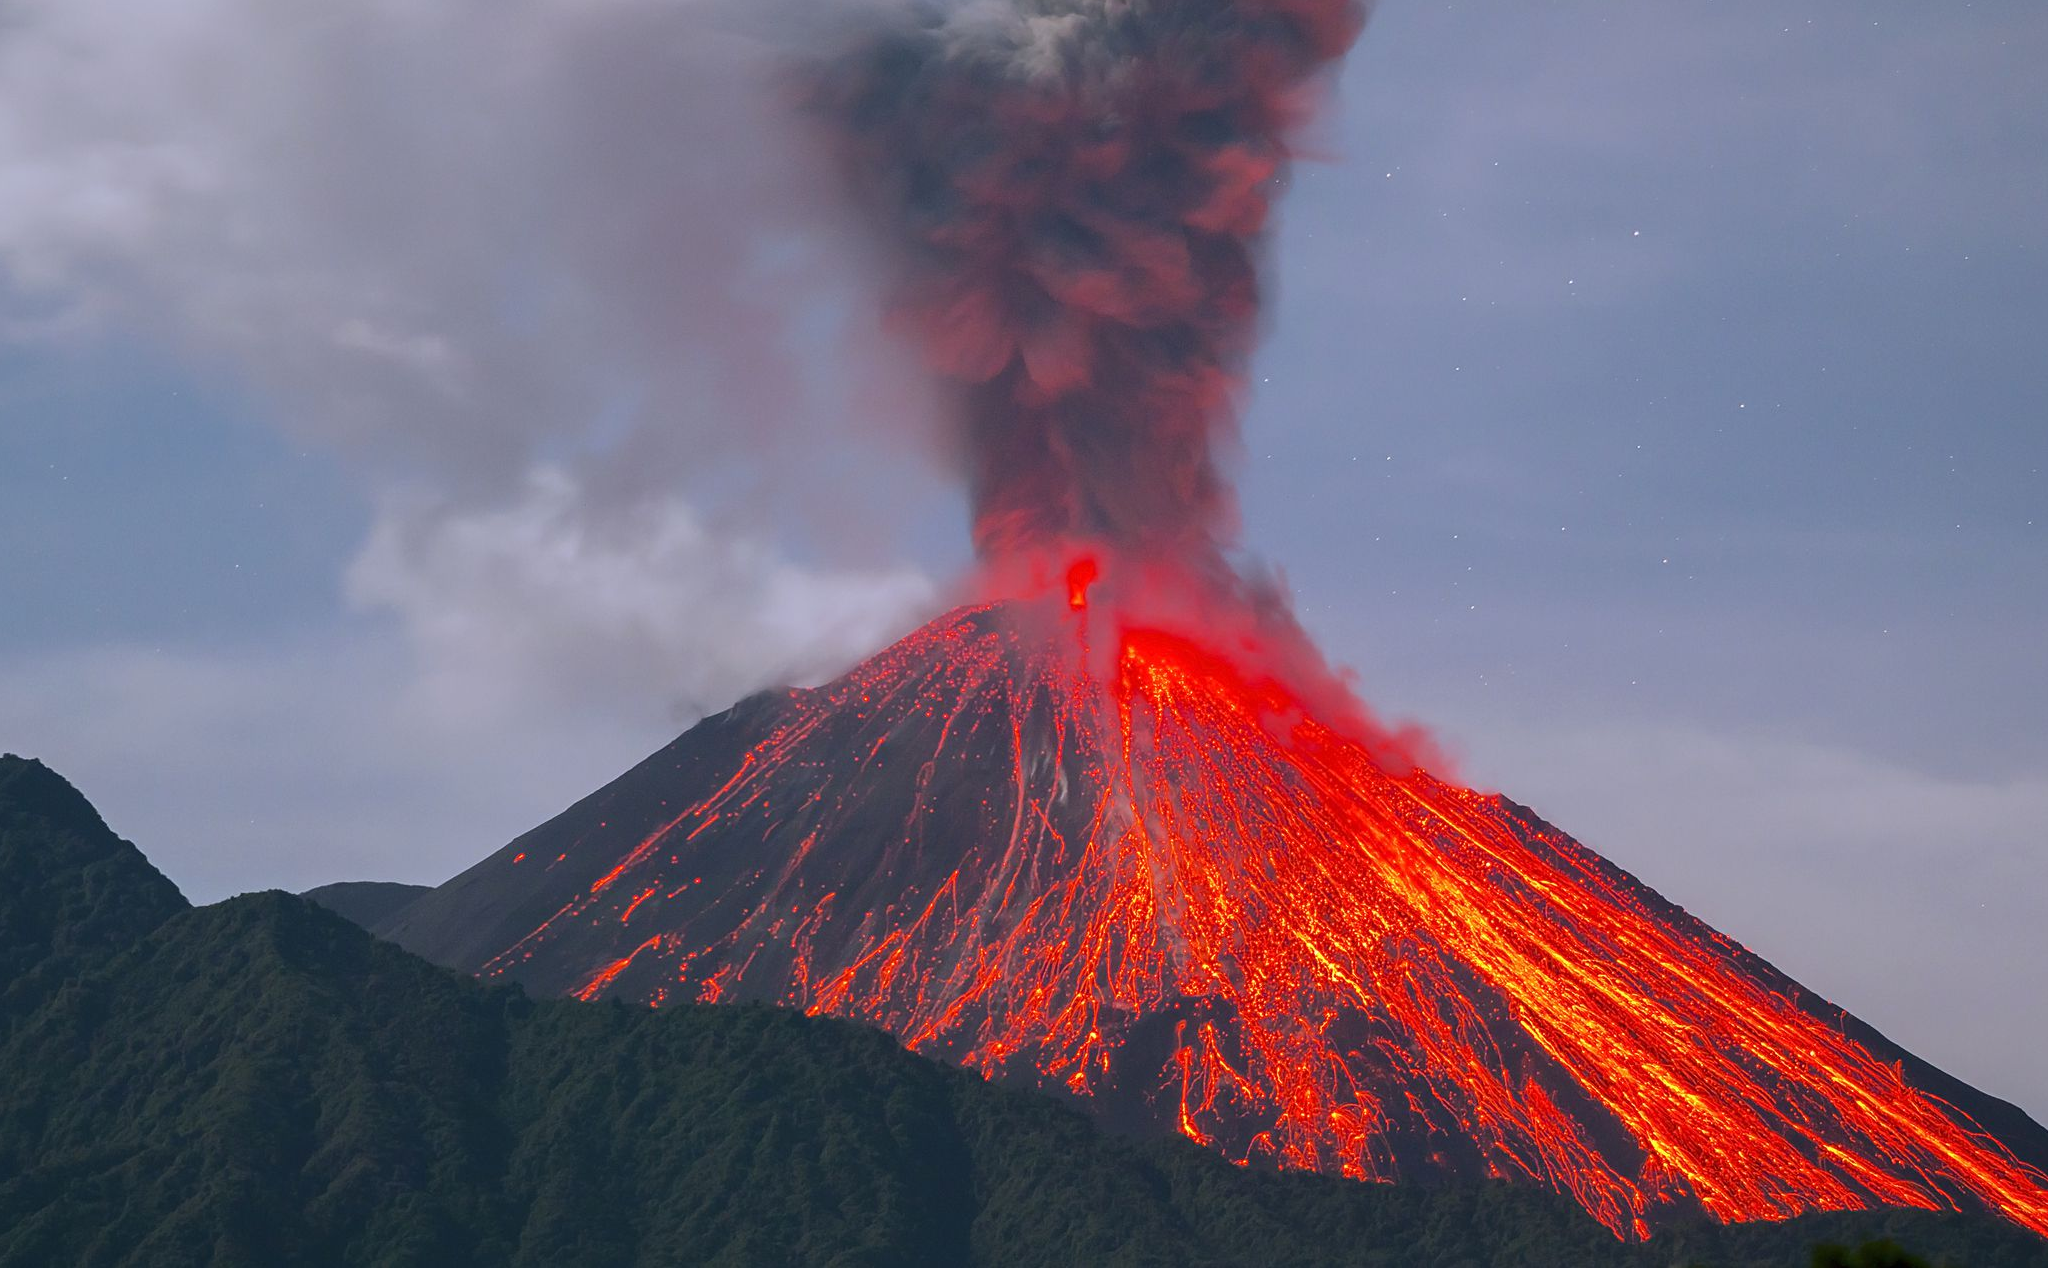 [Có thể bạn chưa biết] Thảm họa núi lửa nguy hiểm đến mức nào?